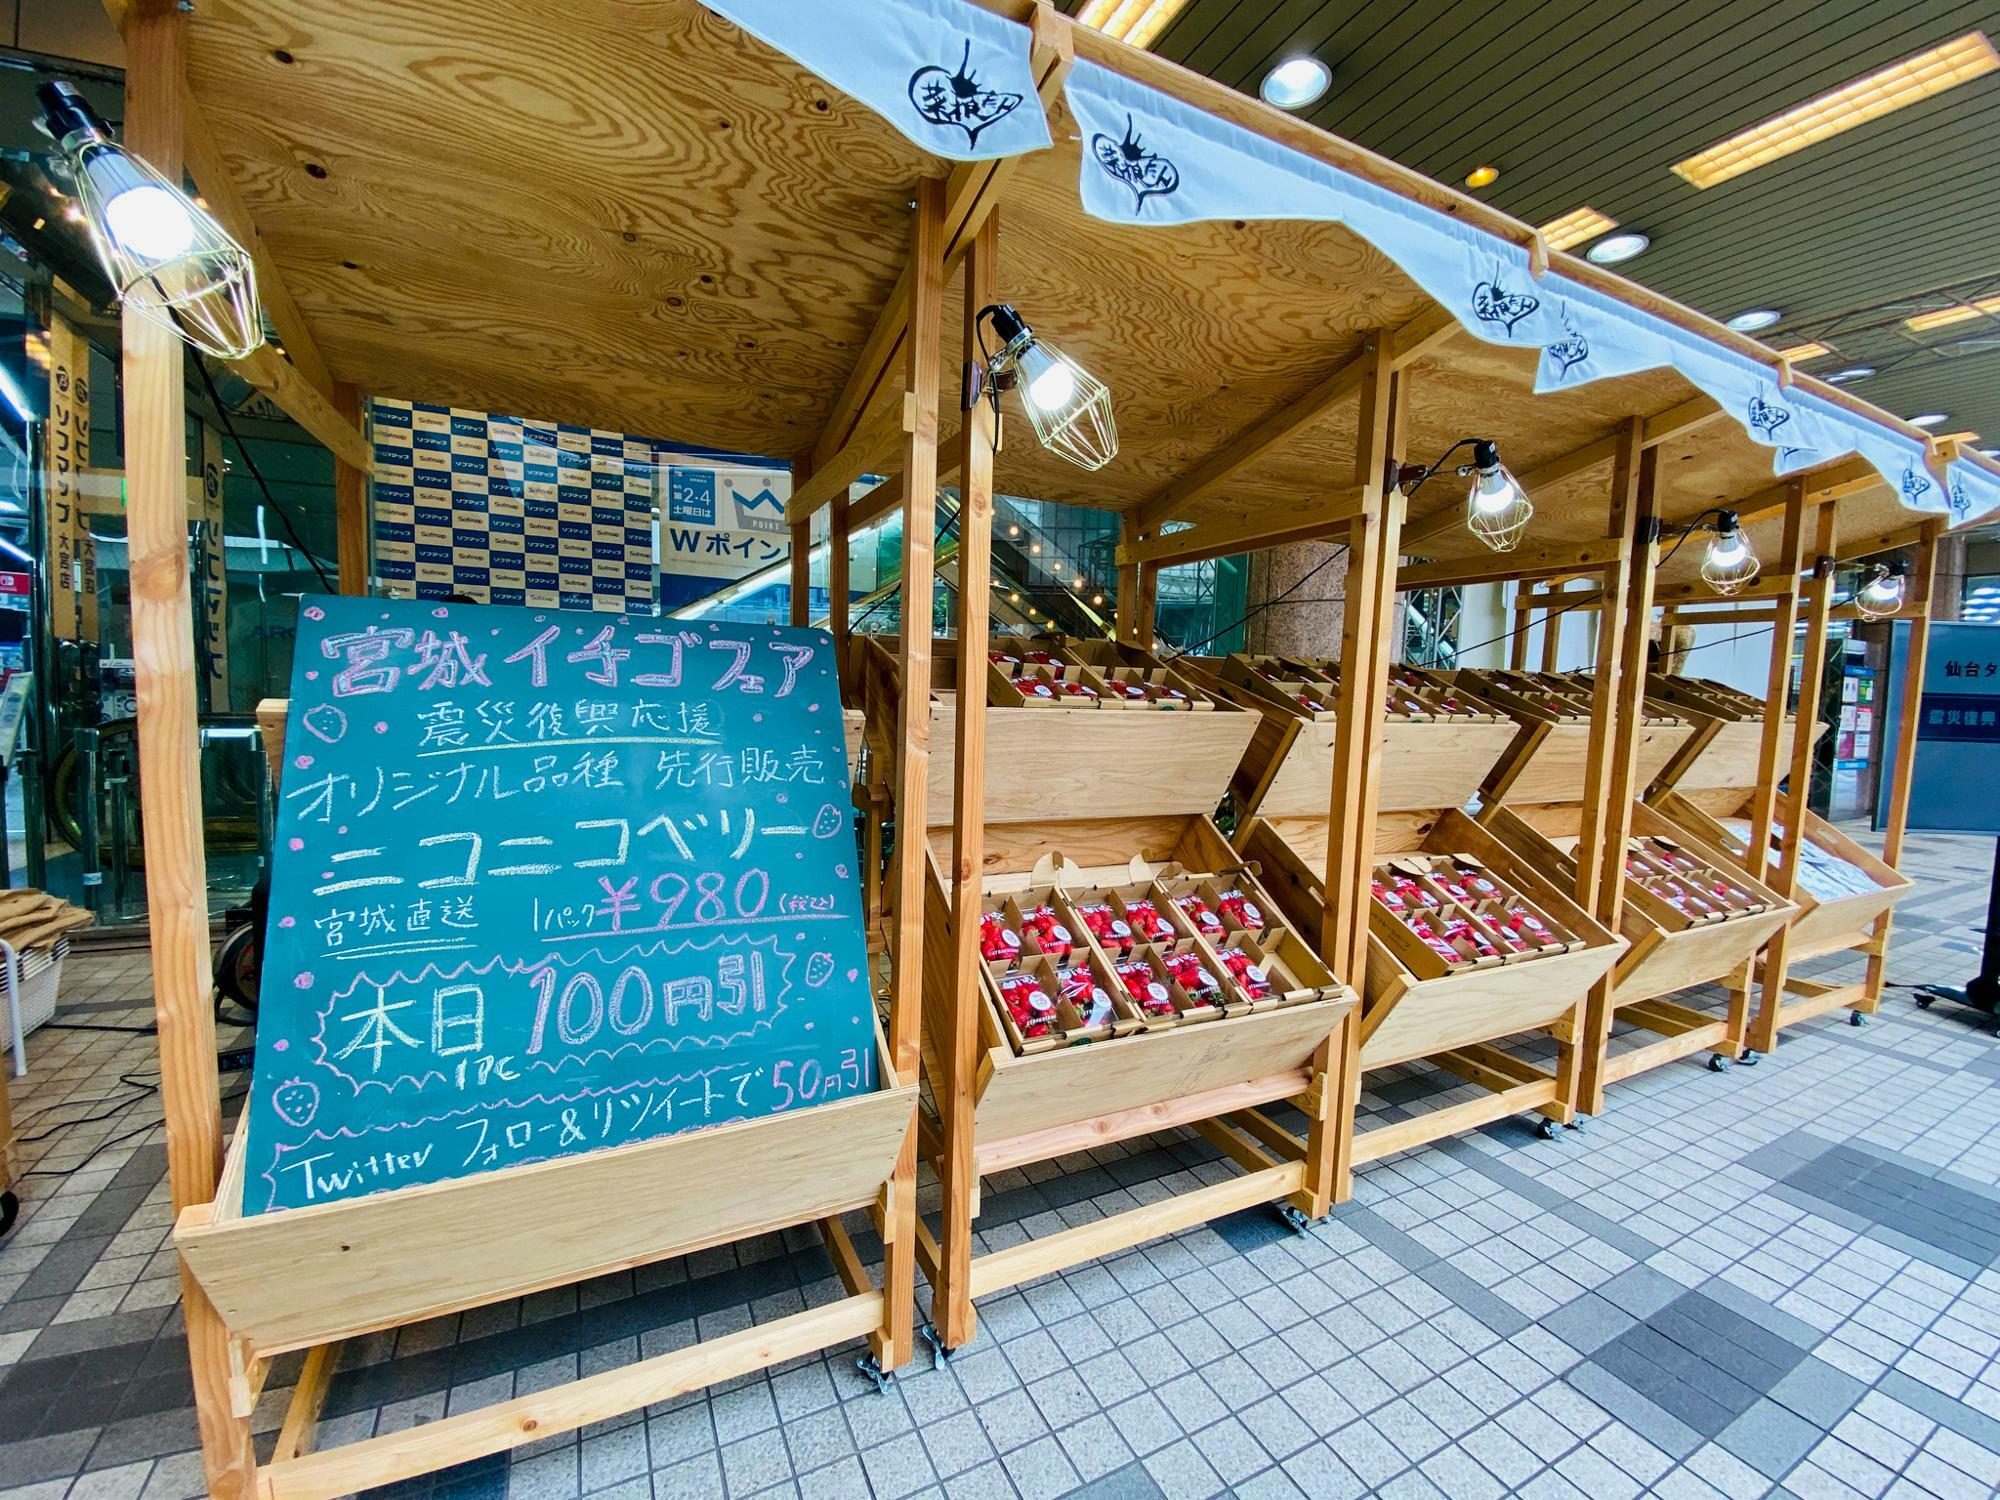 3月7日(日)に実施されていた宮城イチゴフェアの様子。お店の周りにはイチゴの甘い香りが…